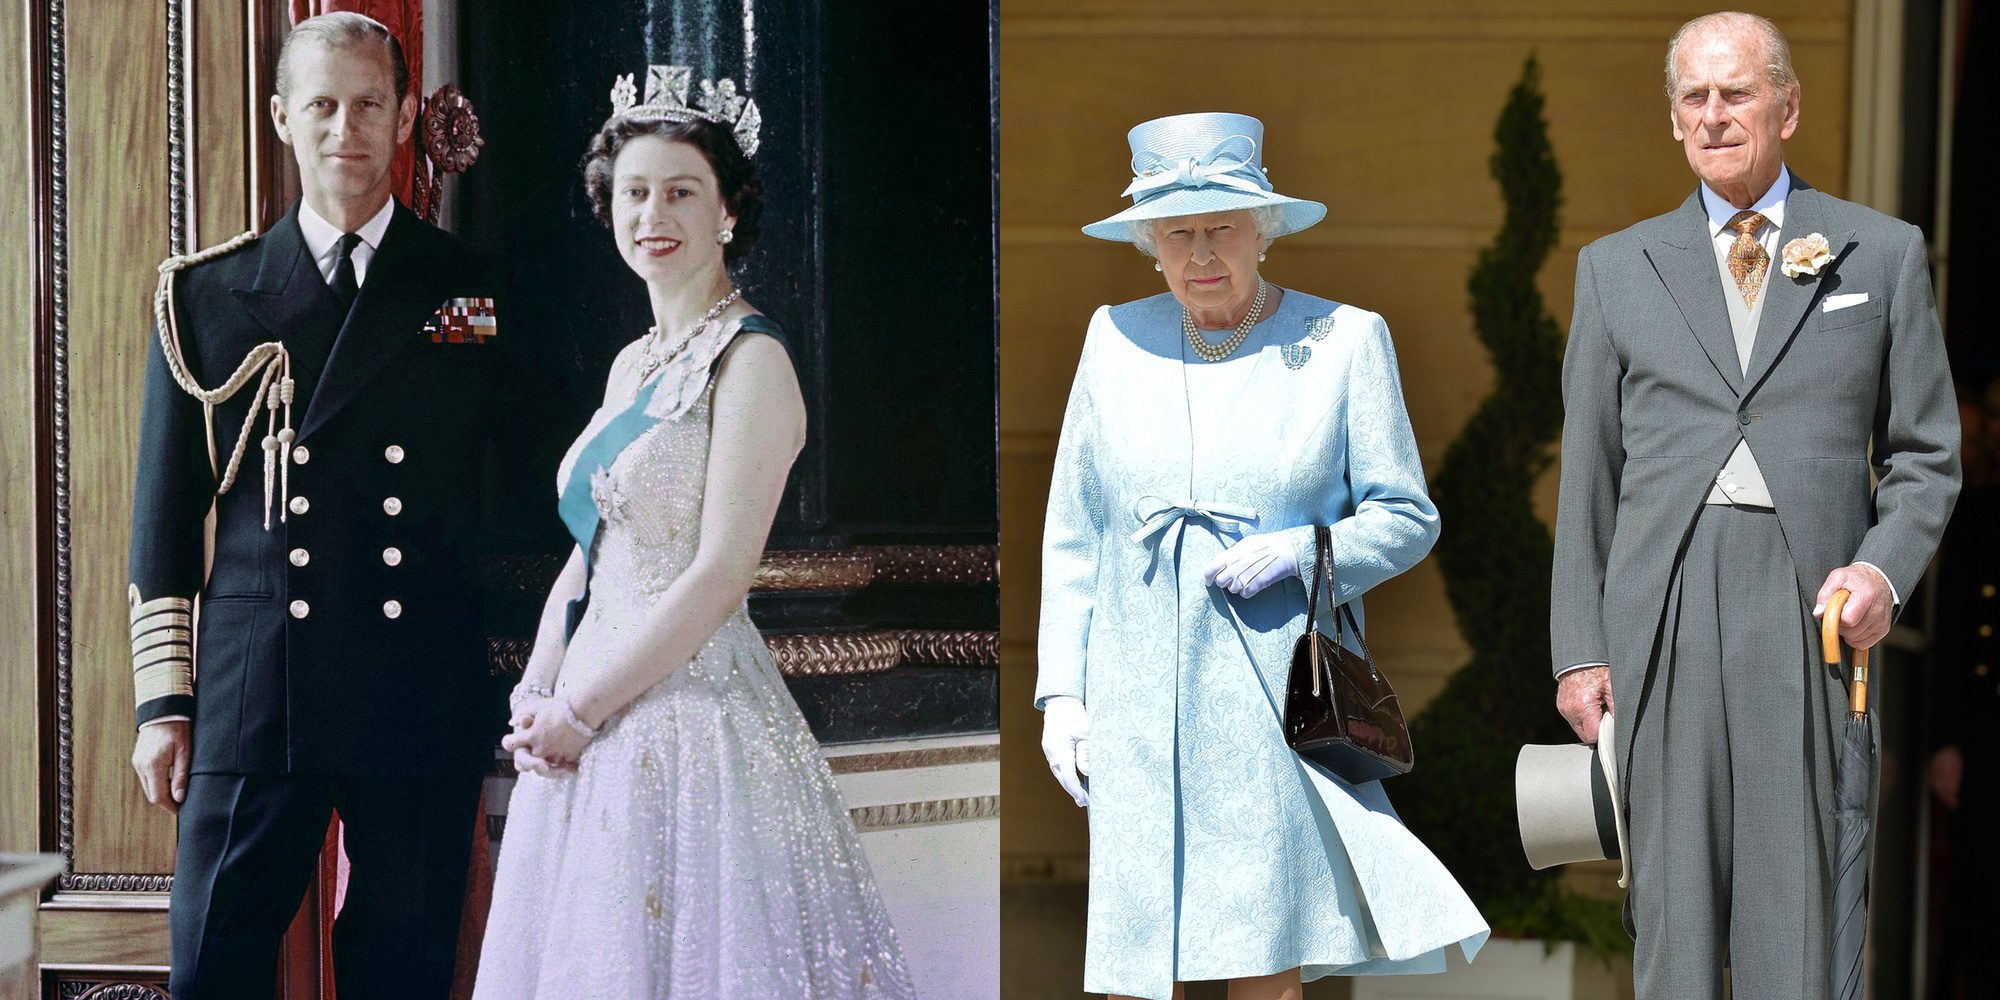 Las 7 claves del matrimonio de la Reina Isabel y el Duque de Edimburgo, un amor longevo y complicado